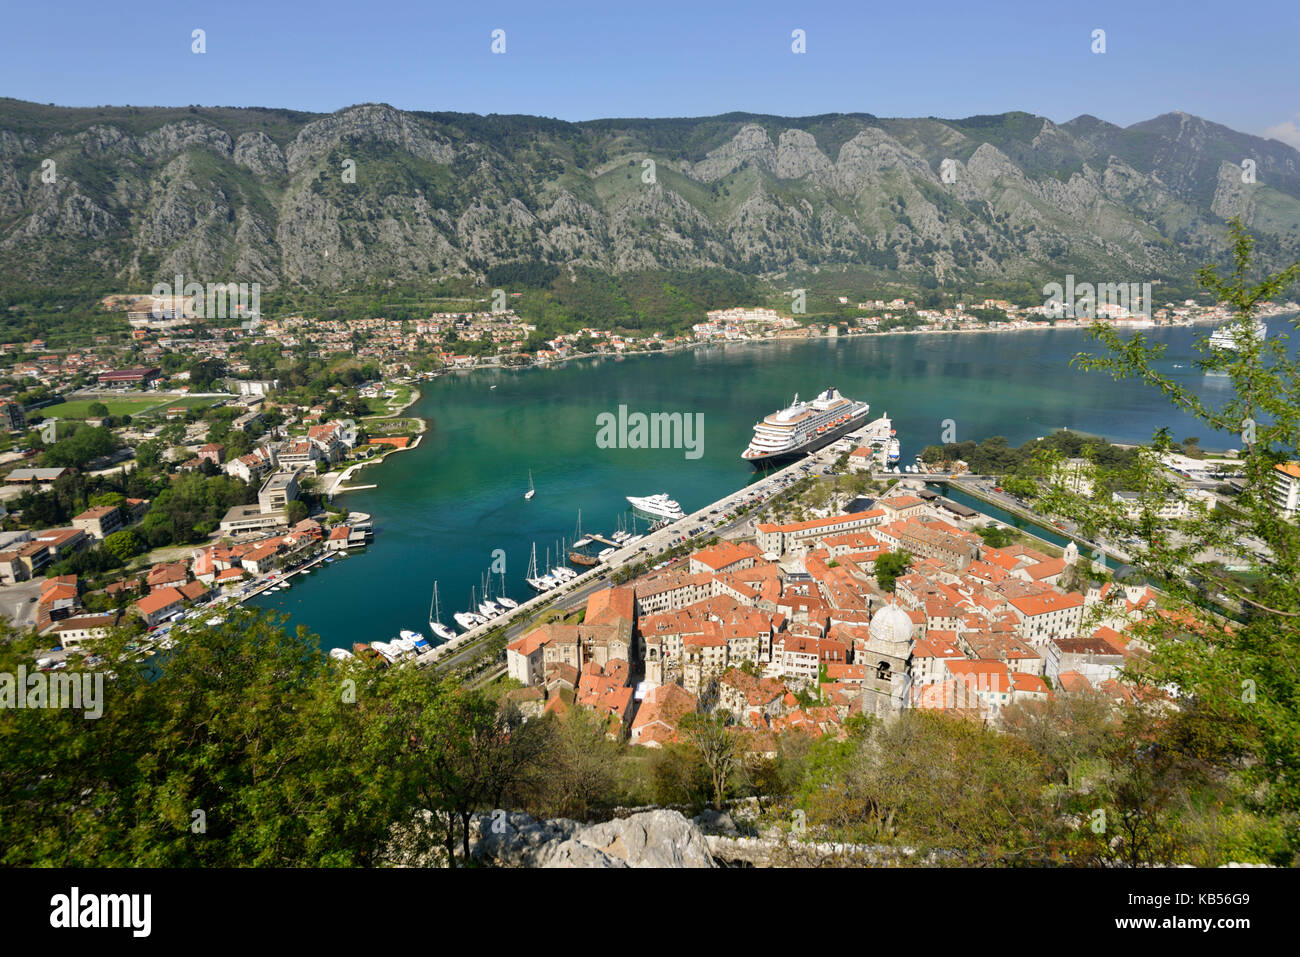 Le Monténégro, côte adriatique, baie de Kotor, vieille ville de Kotor, classée au patrimoine mondial de l'UNESCO Banque D'Images